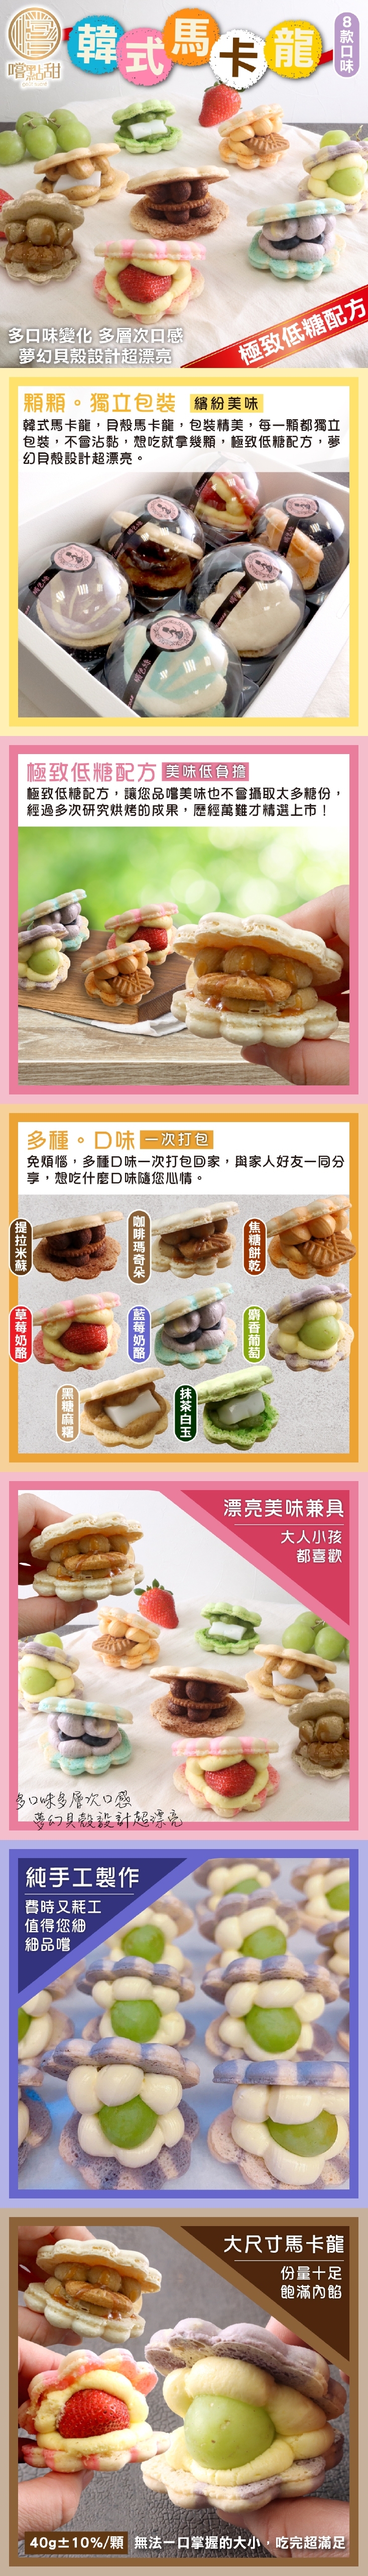 【嚐點甜】韓式夢幻貝殼馬卡龍(6入/盒) 極致低糖配方 8種口味任選